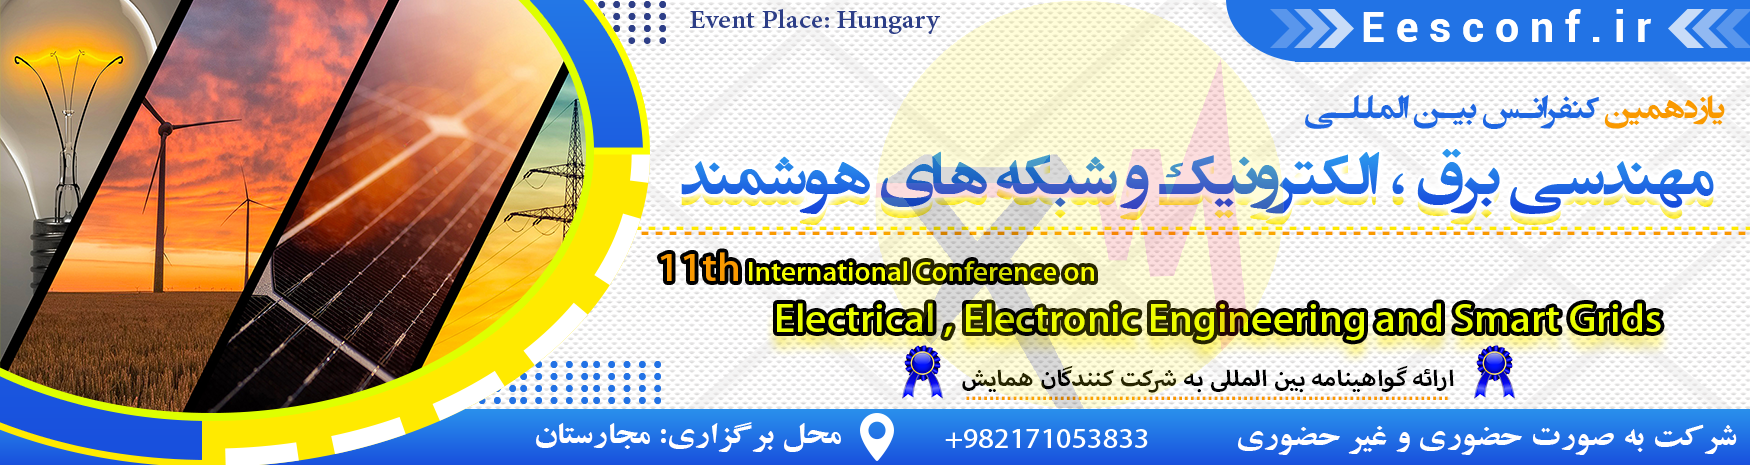 کنفرانس بین المللی مهندسی برق ،الکترونیک و شبکه های هوشمند